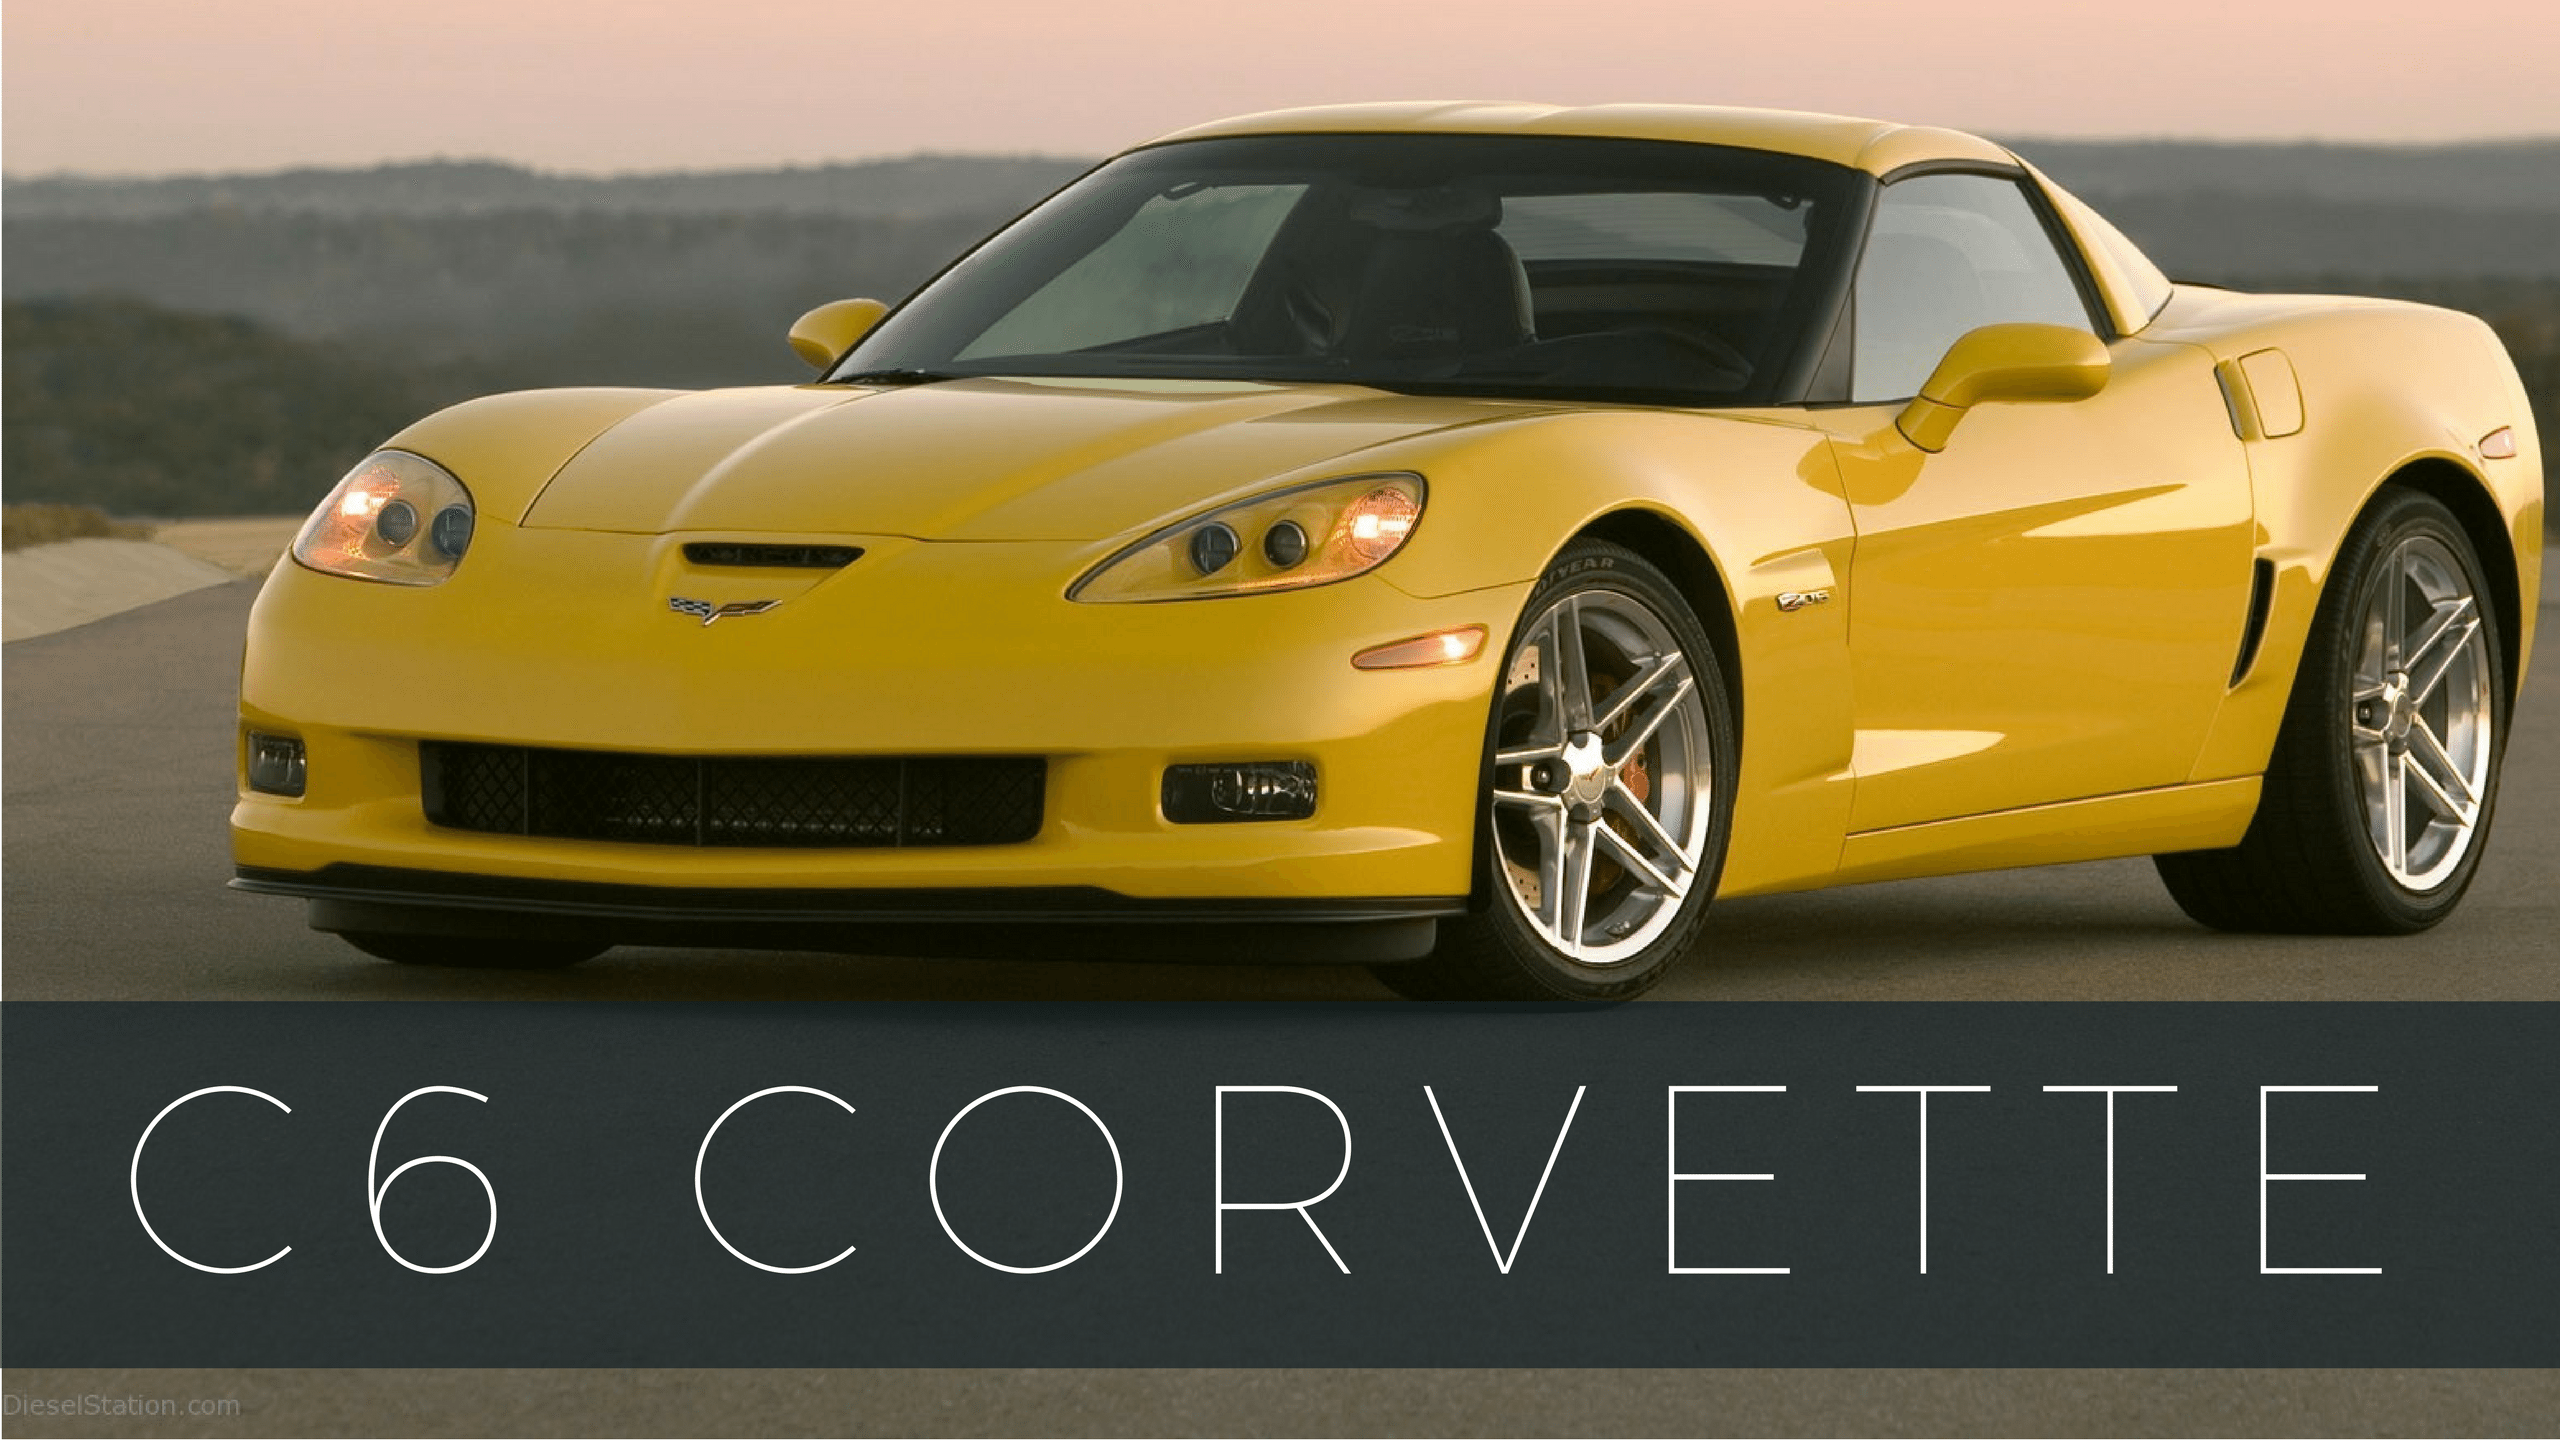 C6 Corvette Old Logo - Corvette Models - Full List of Chevrolet Corvette Models & Years